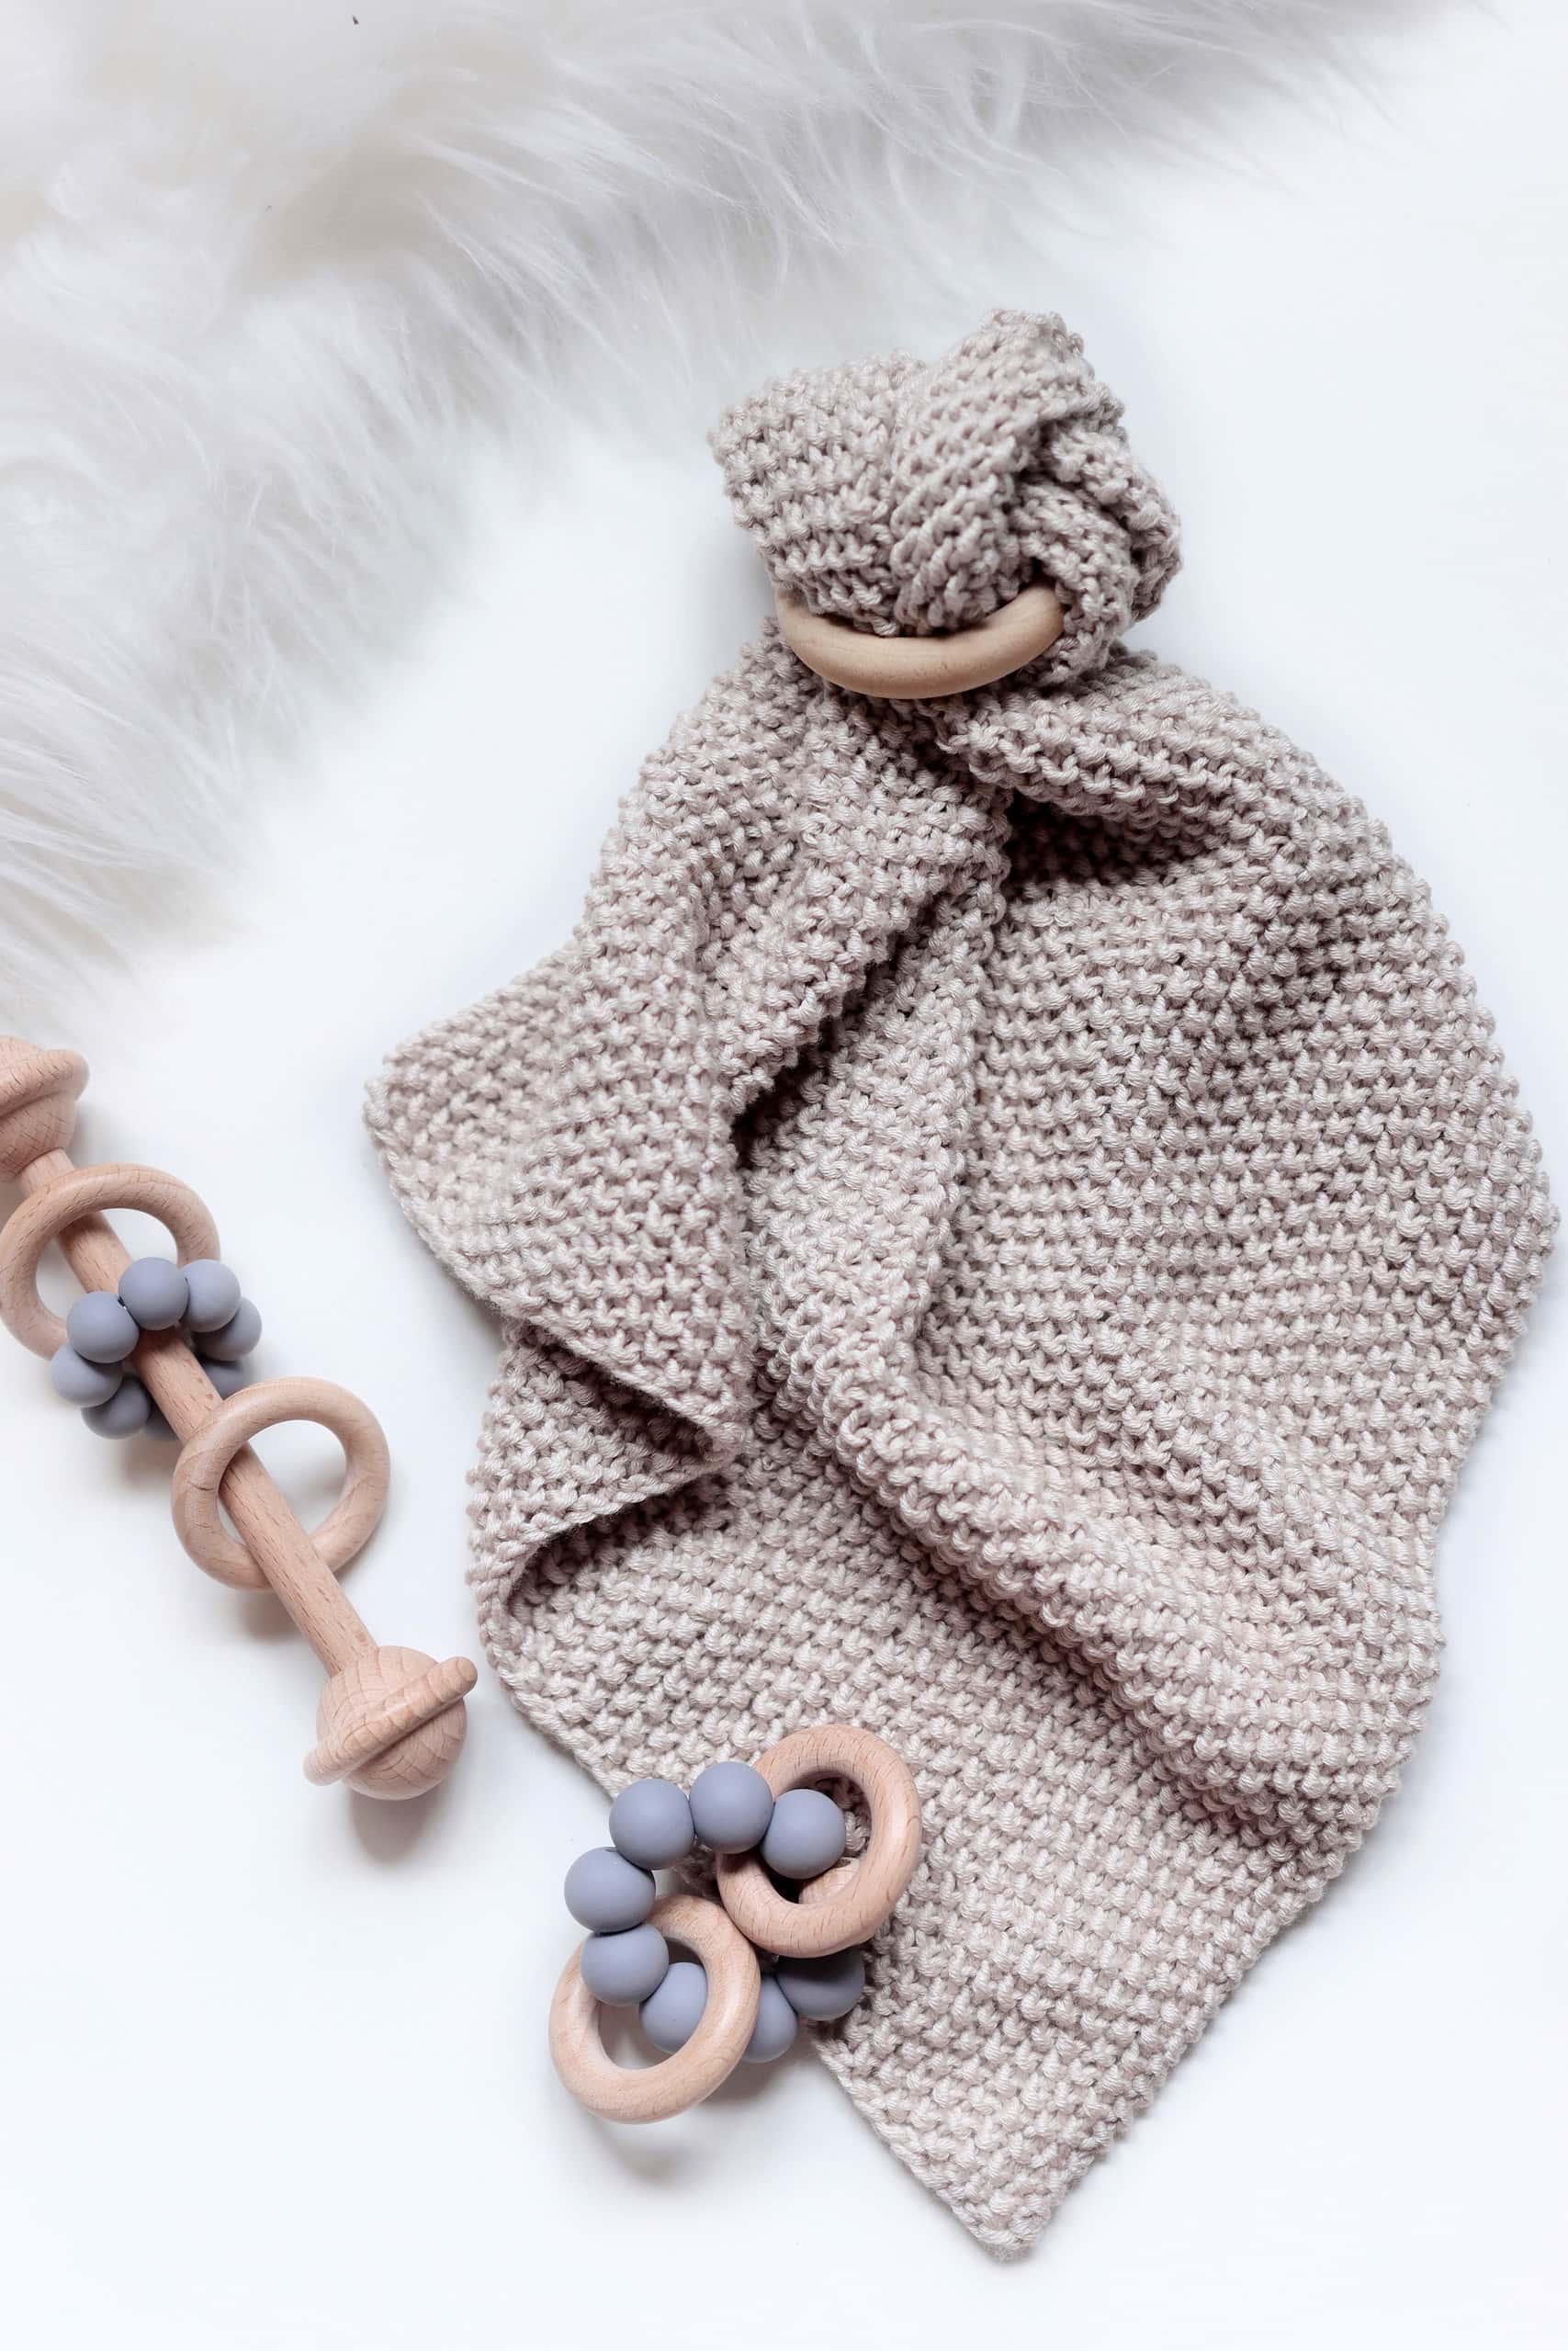 The Twinkle Lovey Knitting Pattern